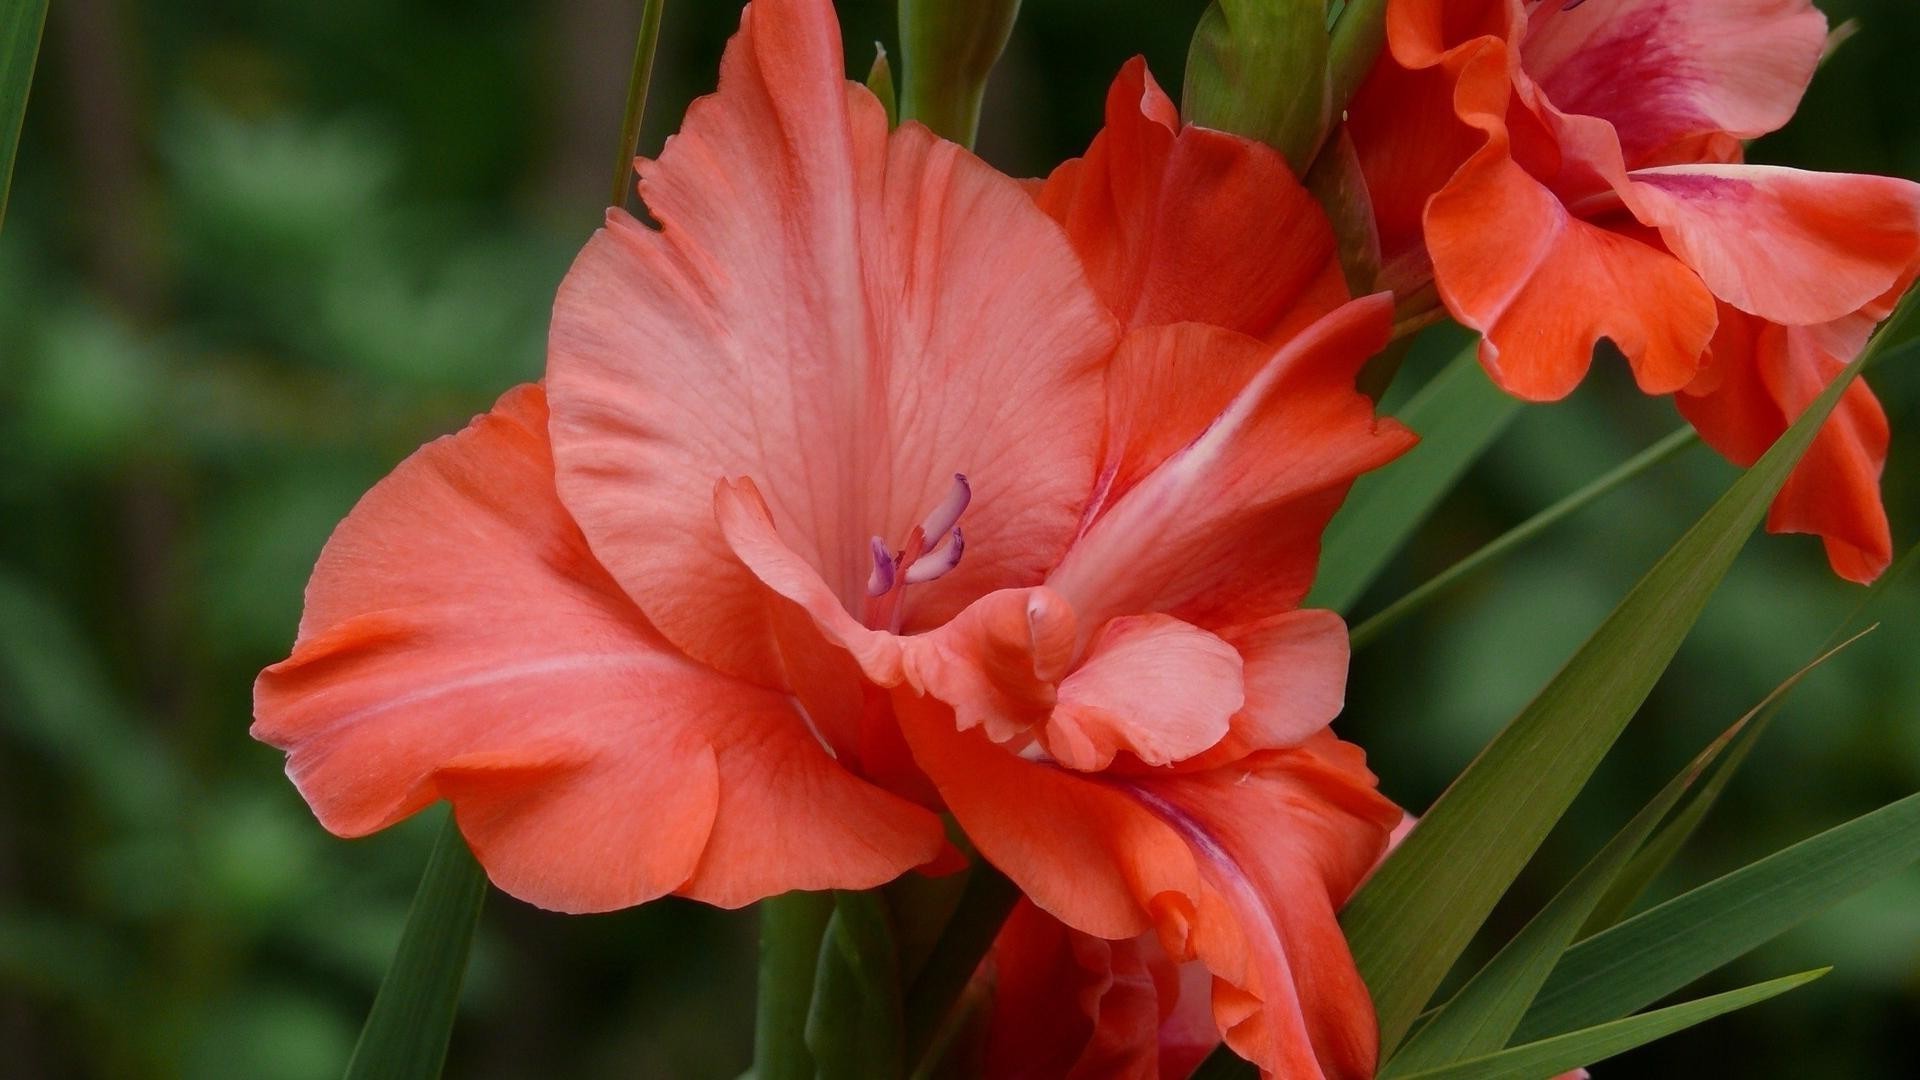 крупным планом цветок природа флора сад лист блюминг лето лепесток цветочные цвет яркий красивые букет рост сезон крупным планом тропический тюльпан на открытом воздухе